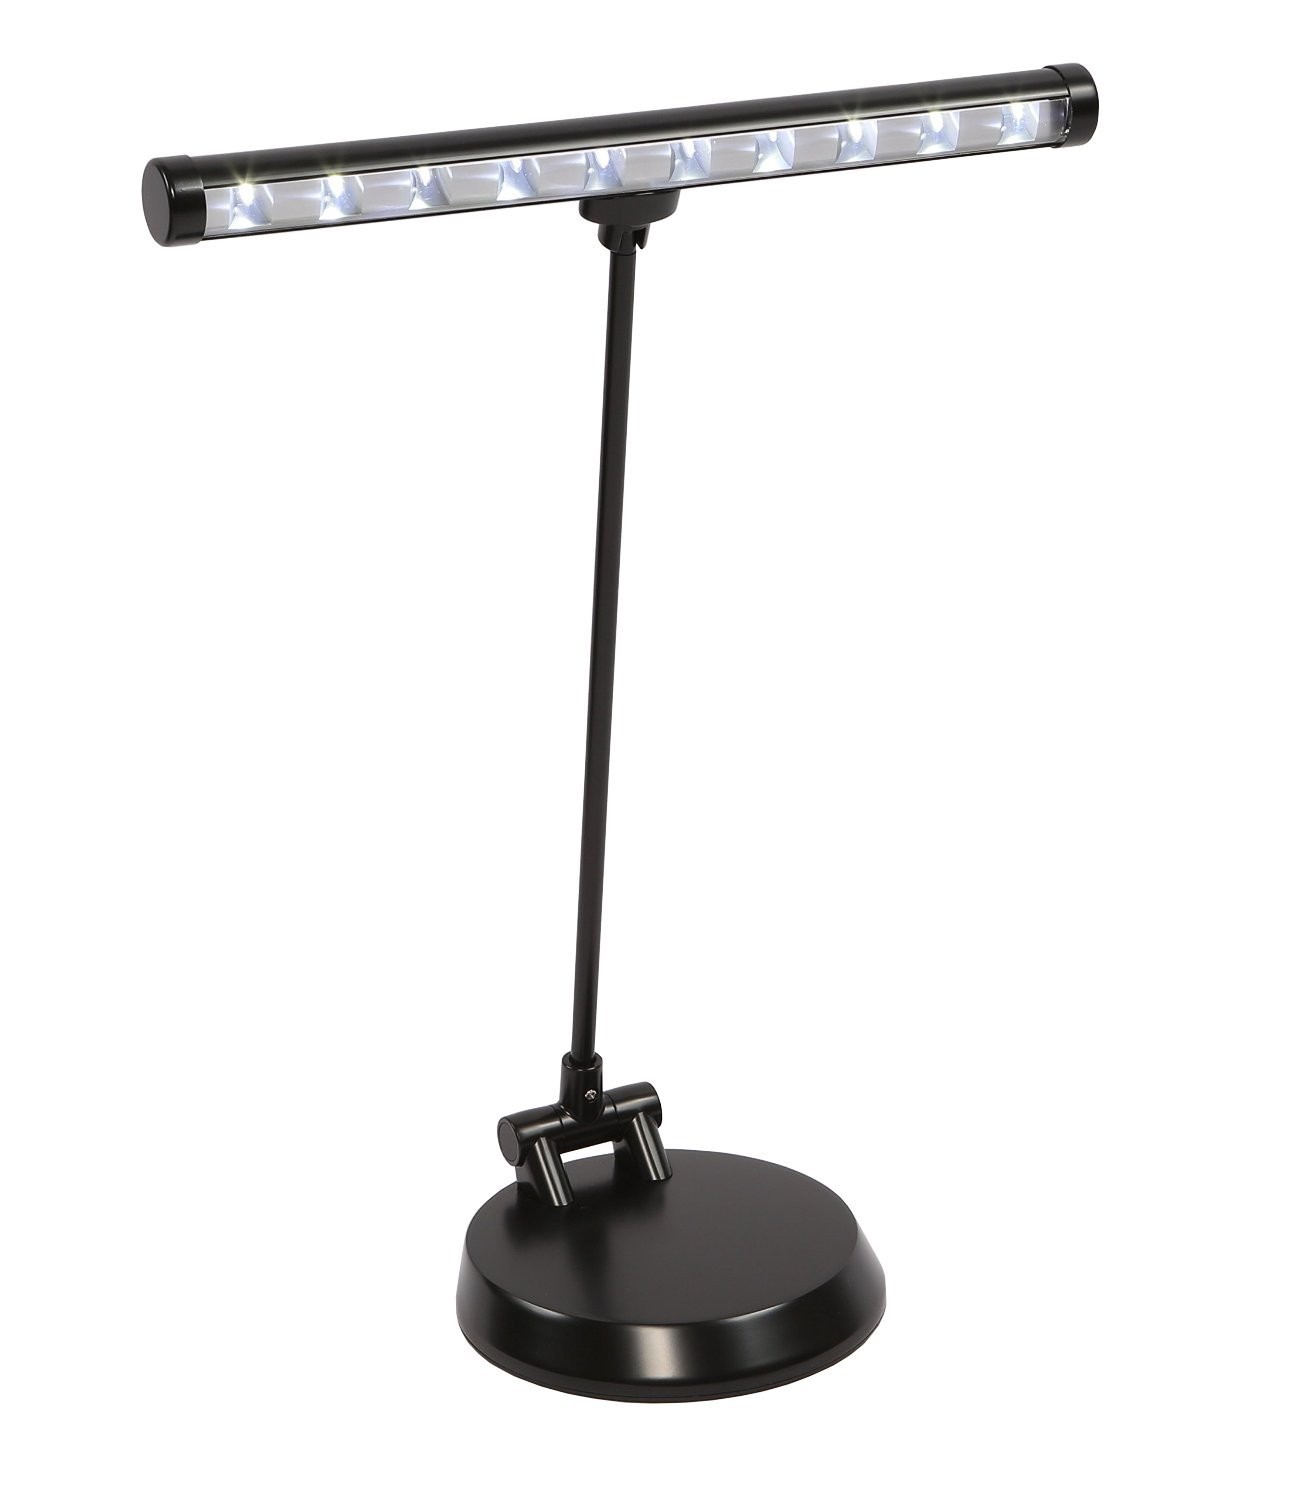 Alneo Light Sunlight Klavierlampe / Schreibtischlampe LED Piano Light mit 10 Power-LEDs - Batterie, USB oder Netzbetrieb - modifizierte robuste Bodenplatte - komplett nach vorne schwenkbar (Farbe Schwarz Matt) 